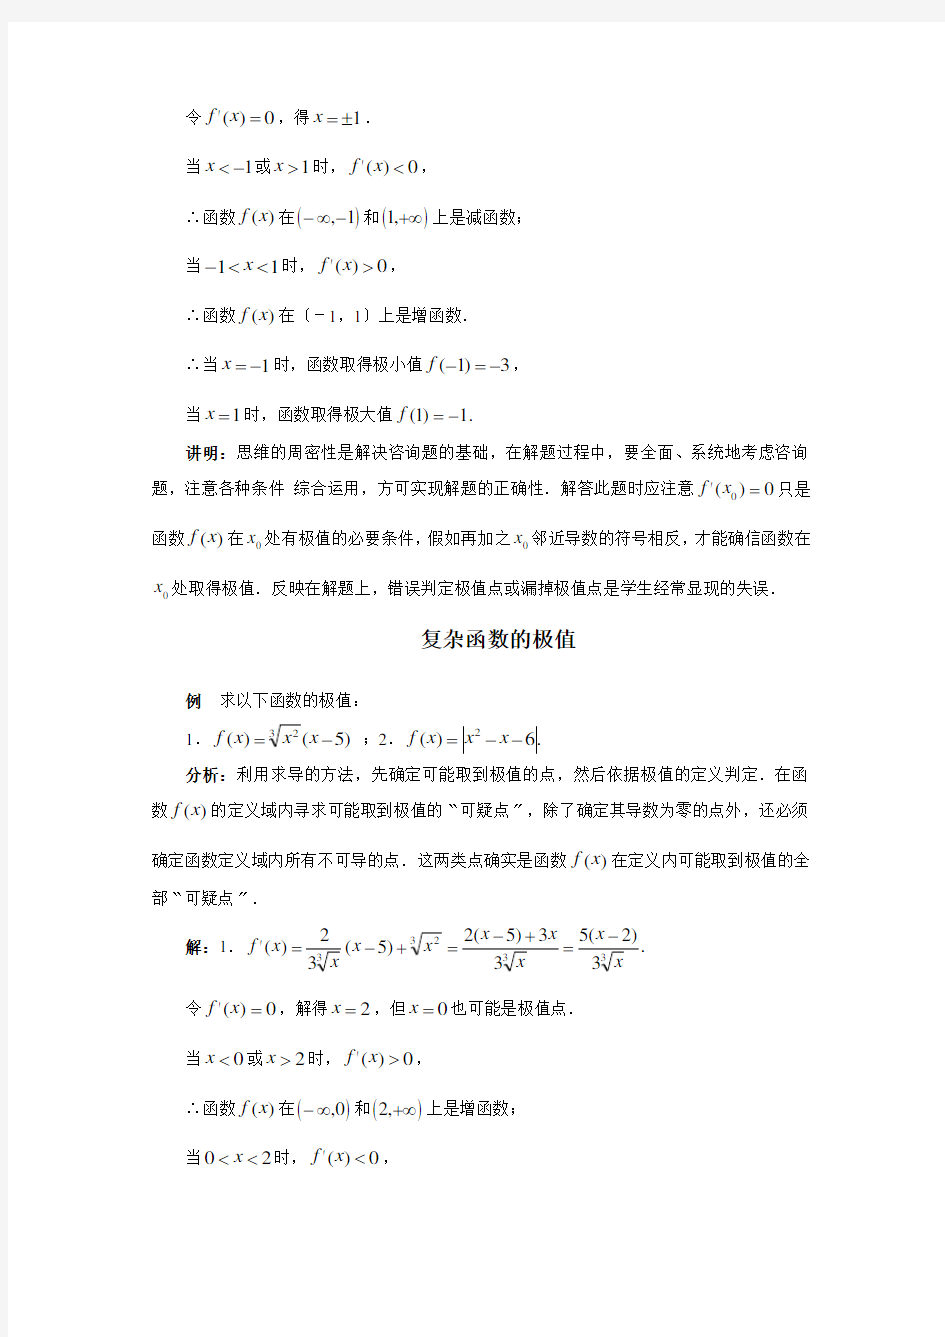 高中数学典型例题大全第三章导数函数的极值